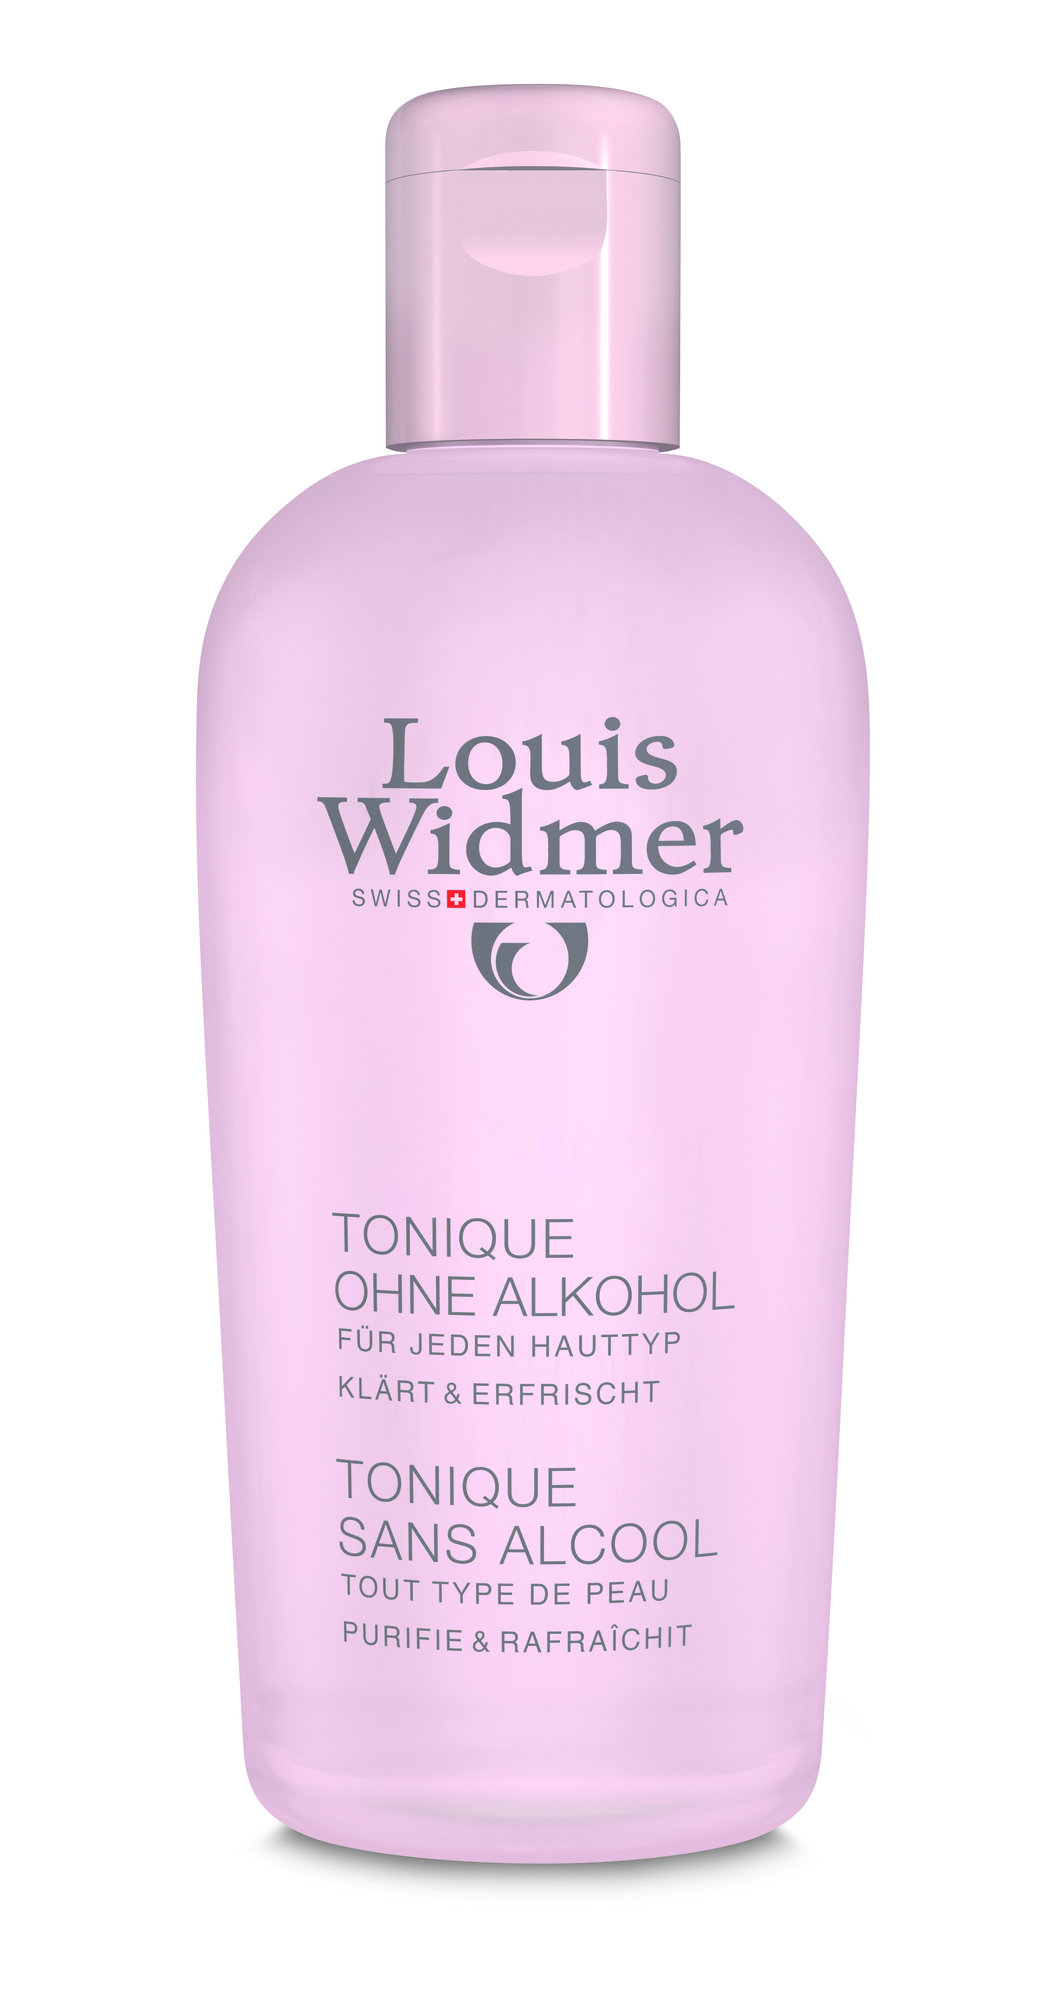 LOUIS WIDMER Tonique ohne Alkohol – 200 ml, leicht parüfmiert